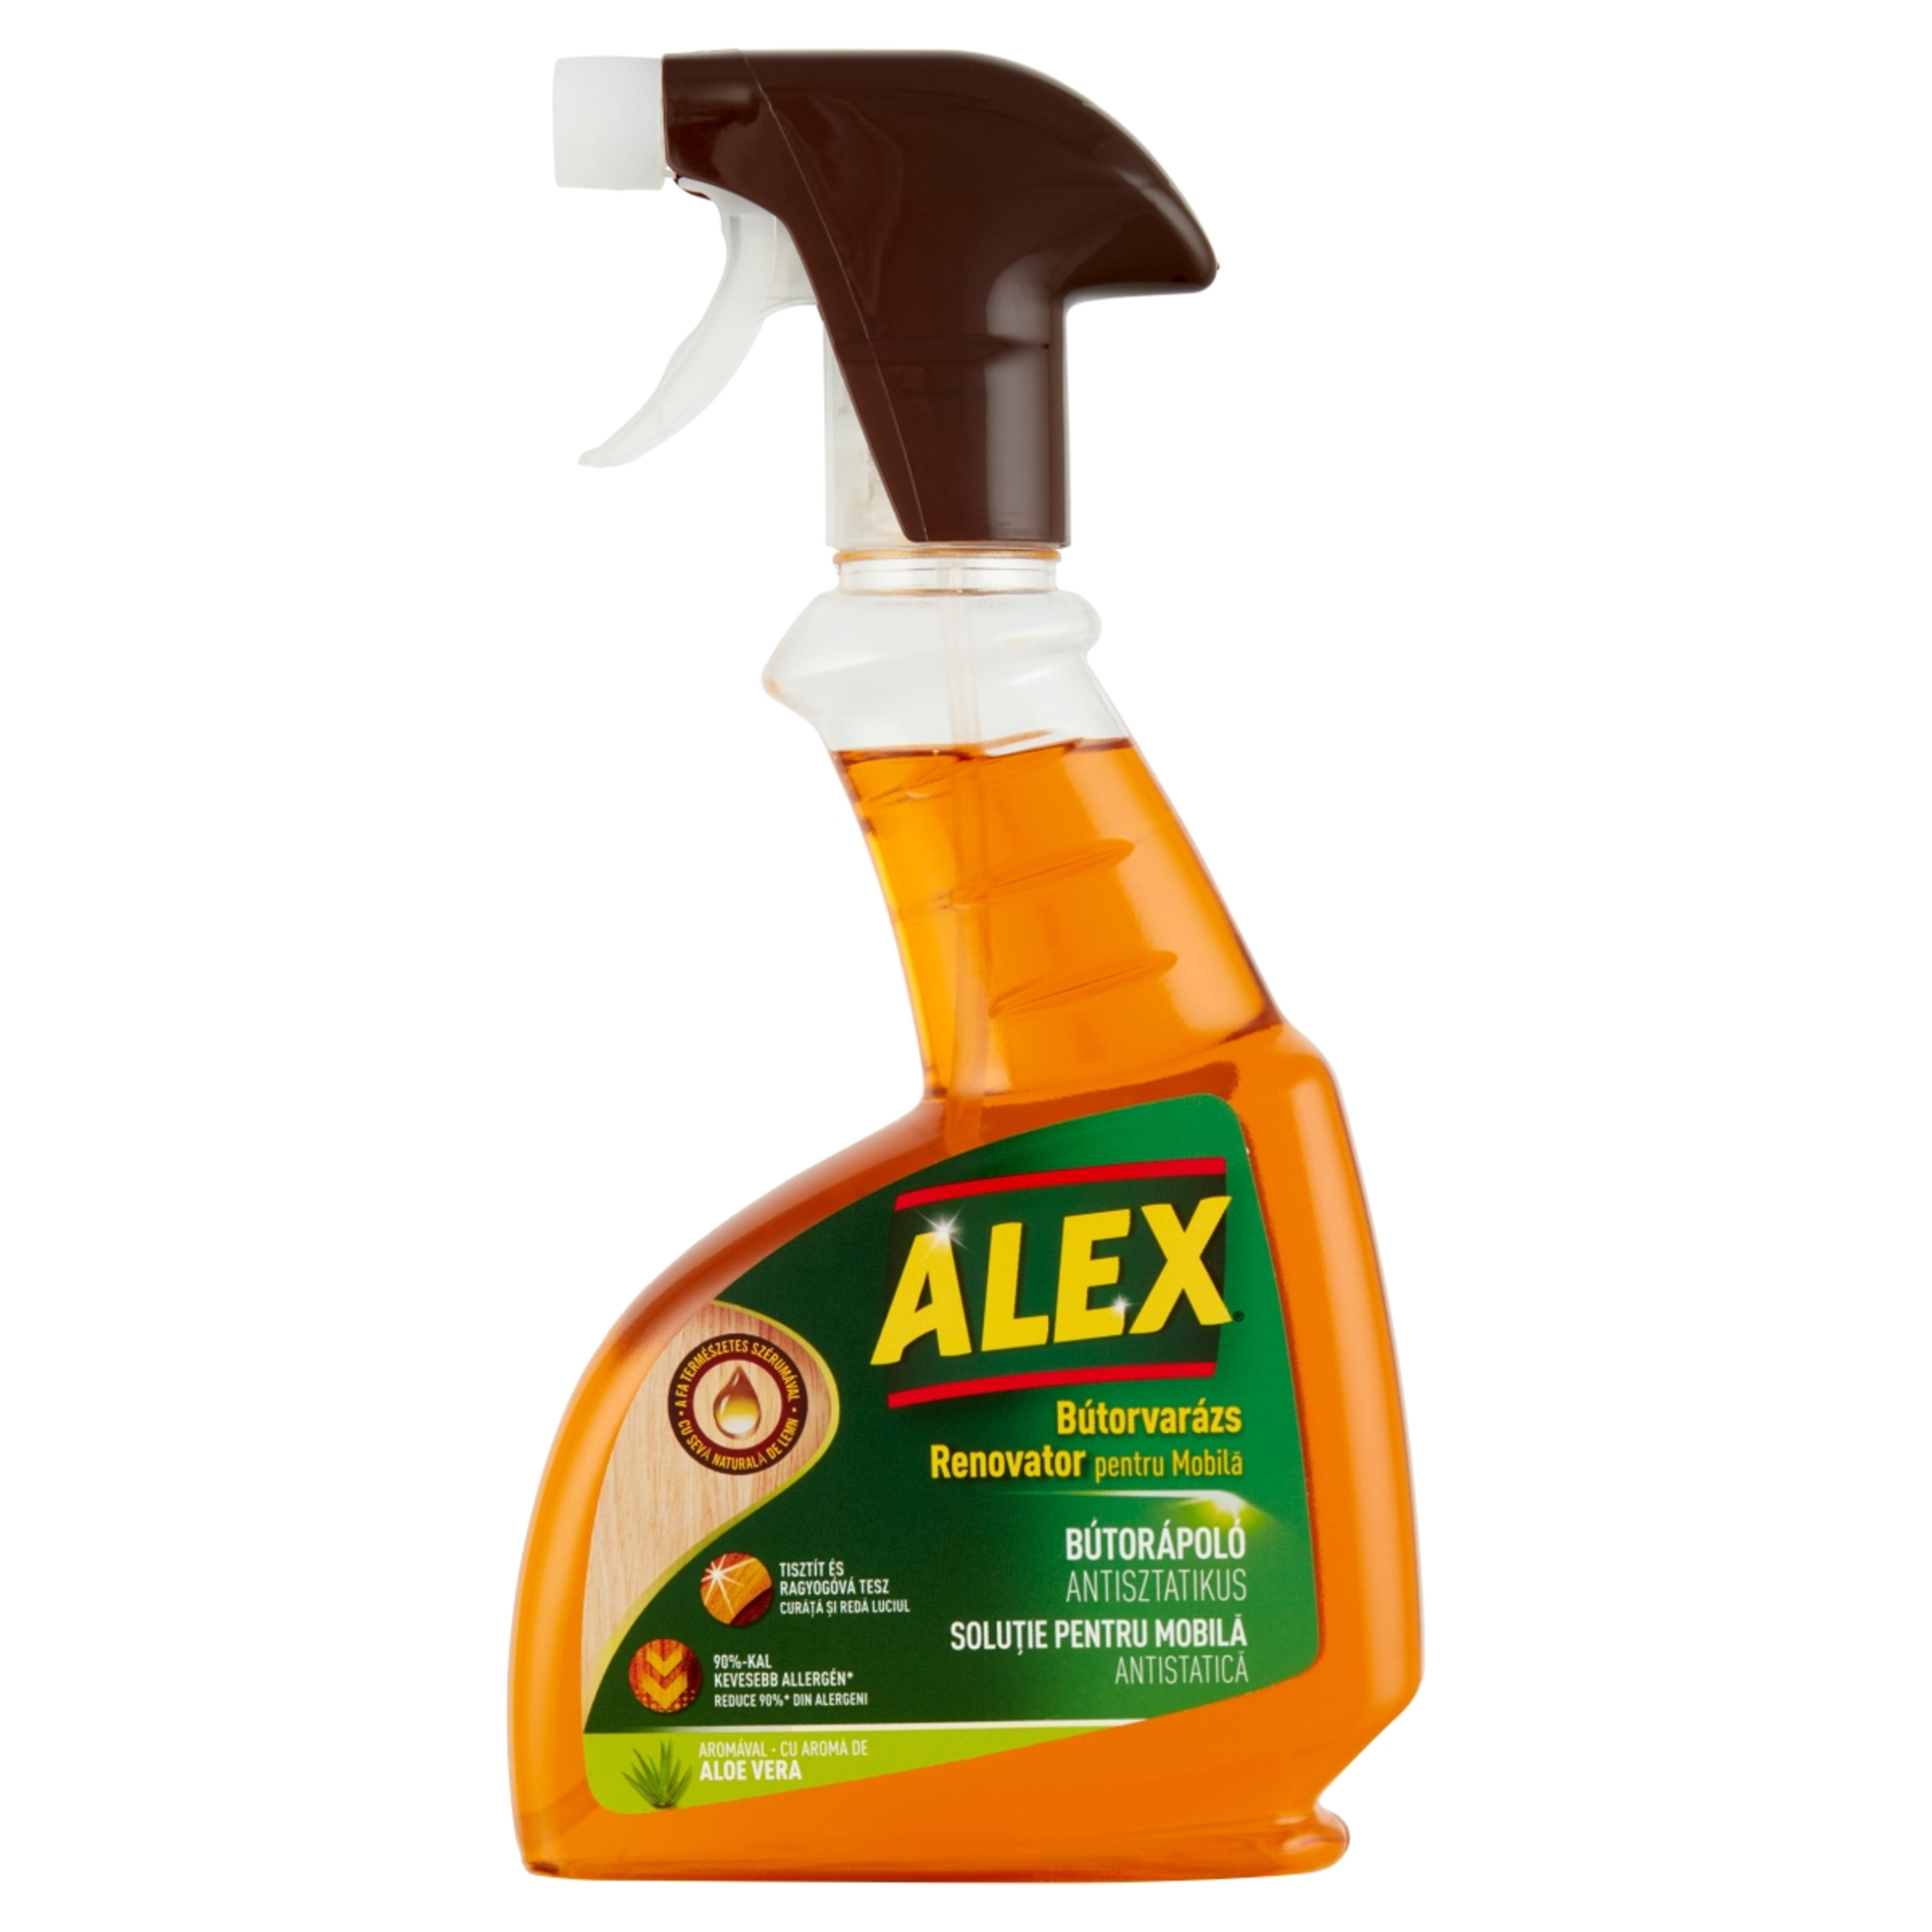 Alex Aloe Vera, Antisztatikus Bútorápoló - 375 ml-1